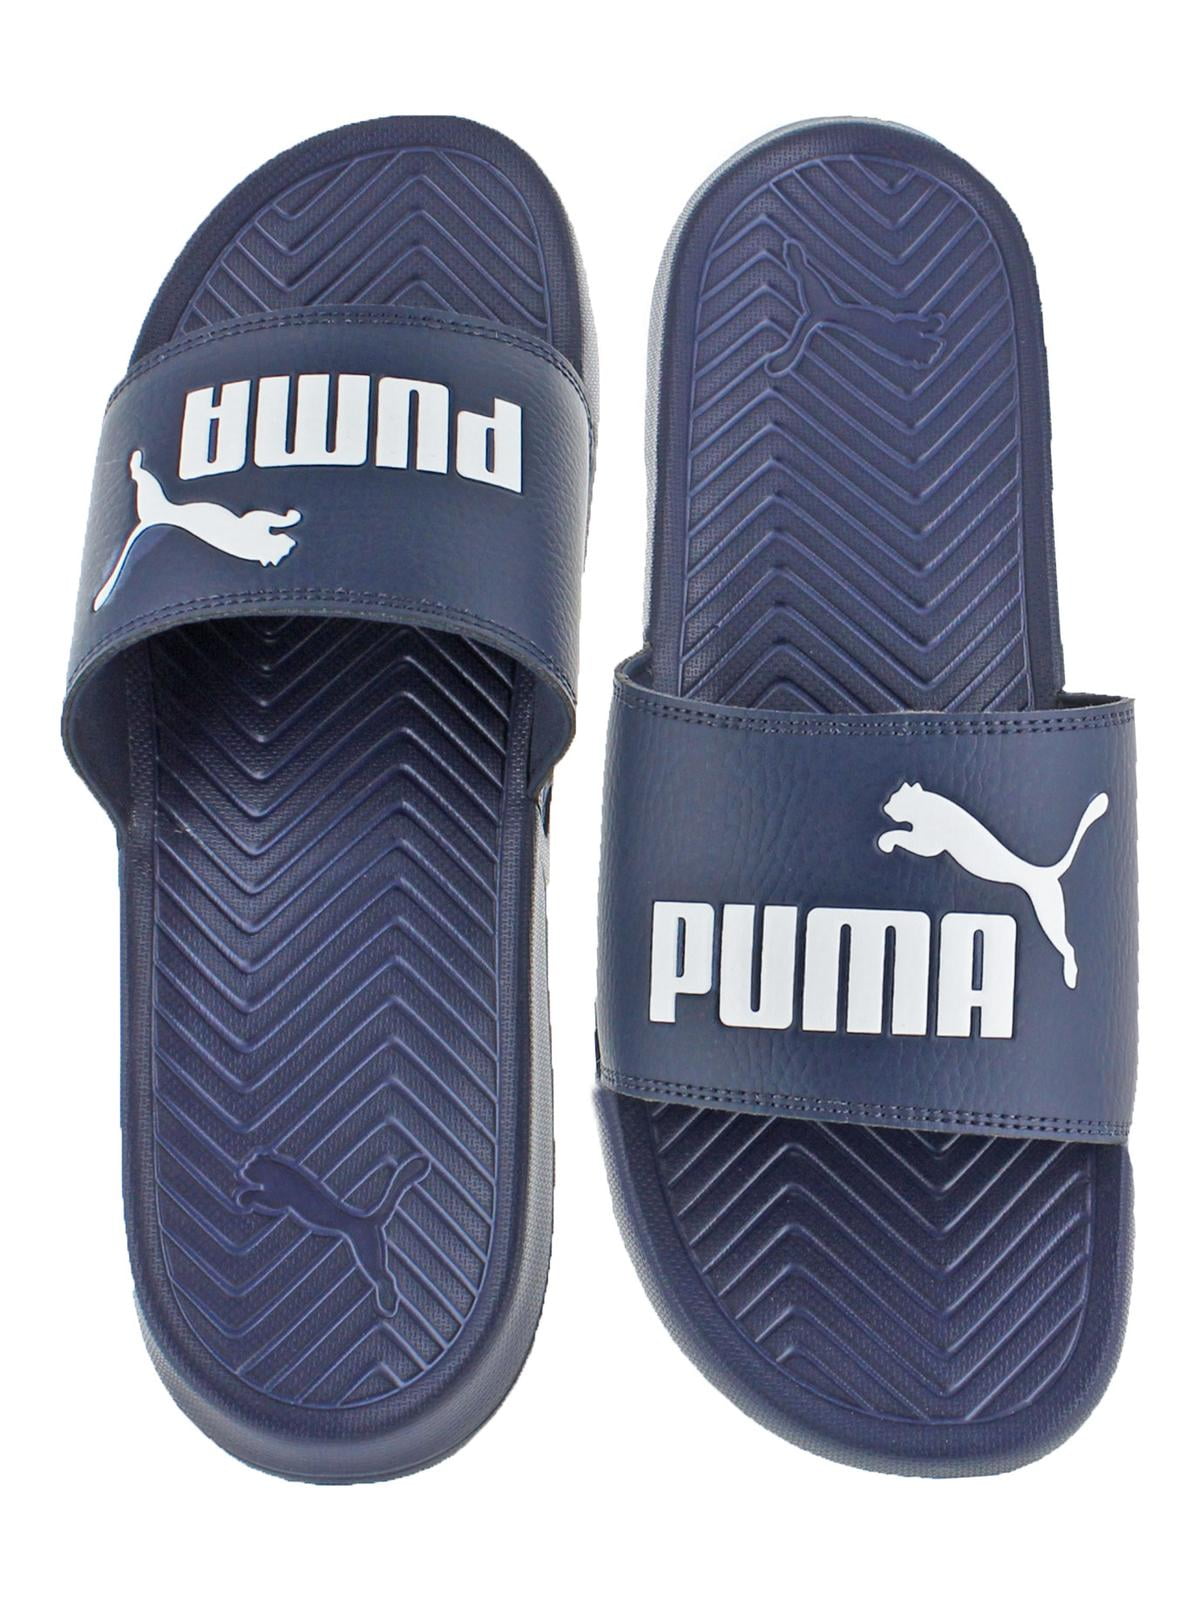 custom puma slides